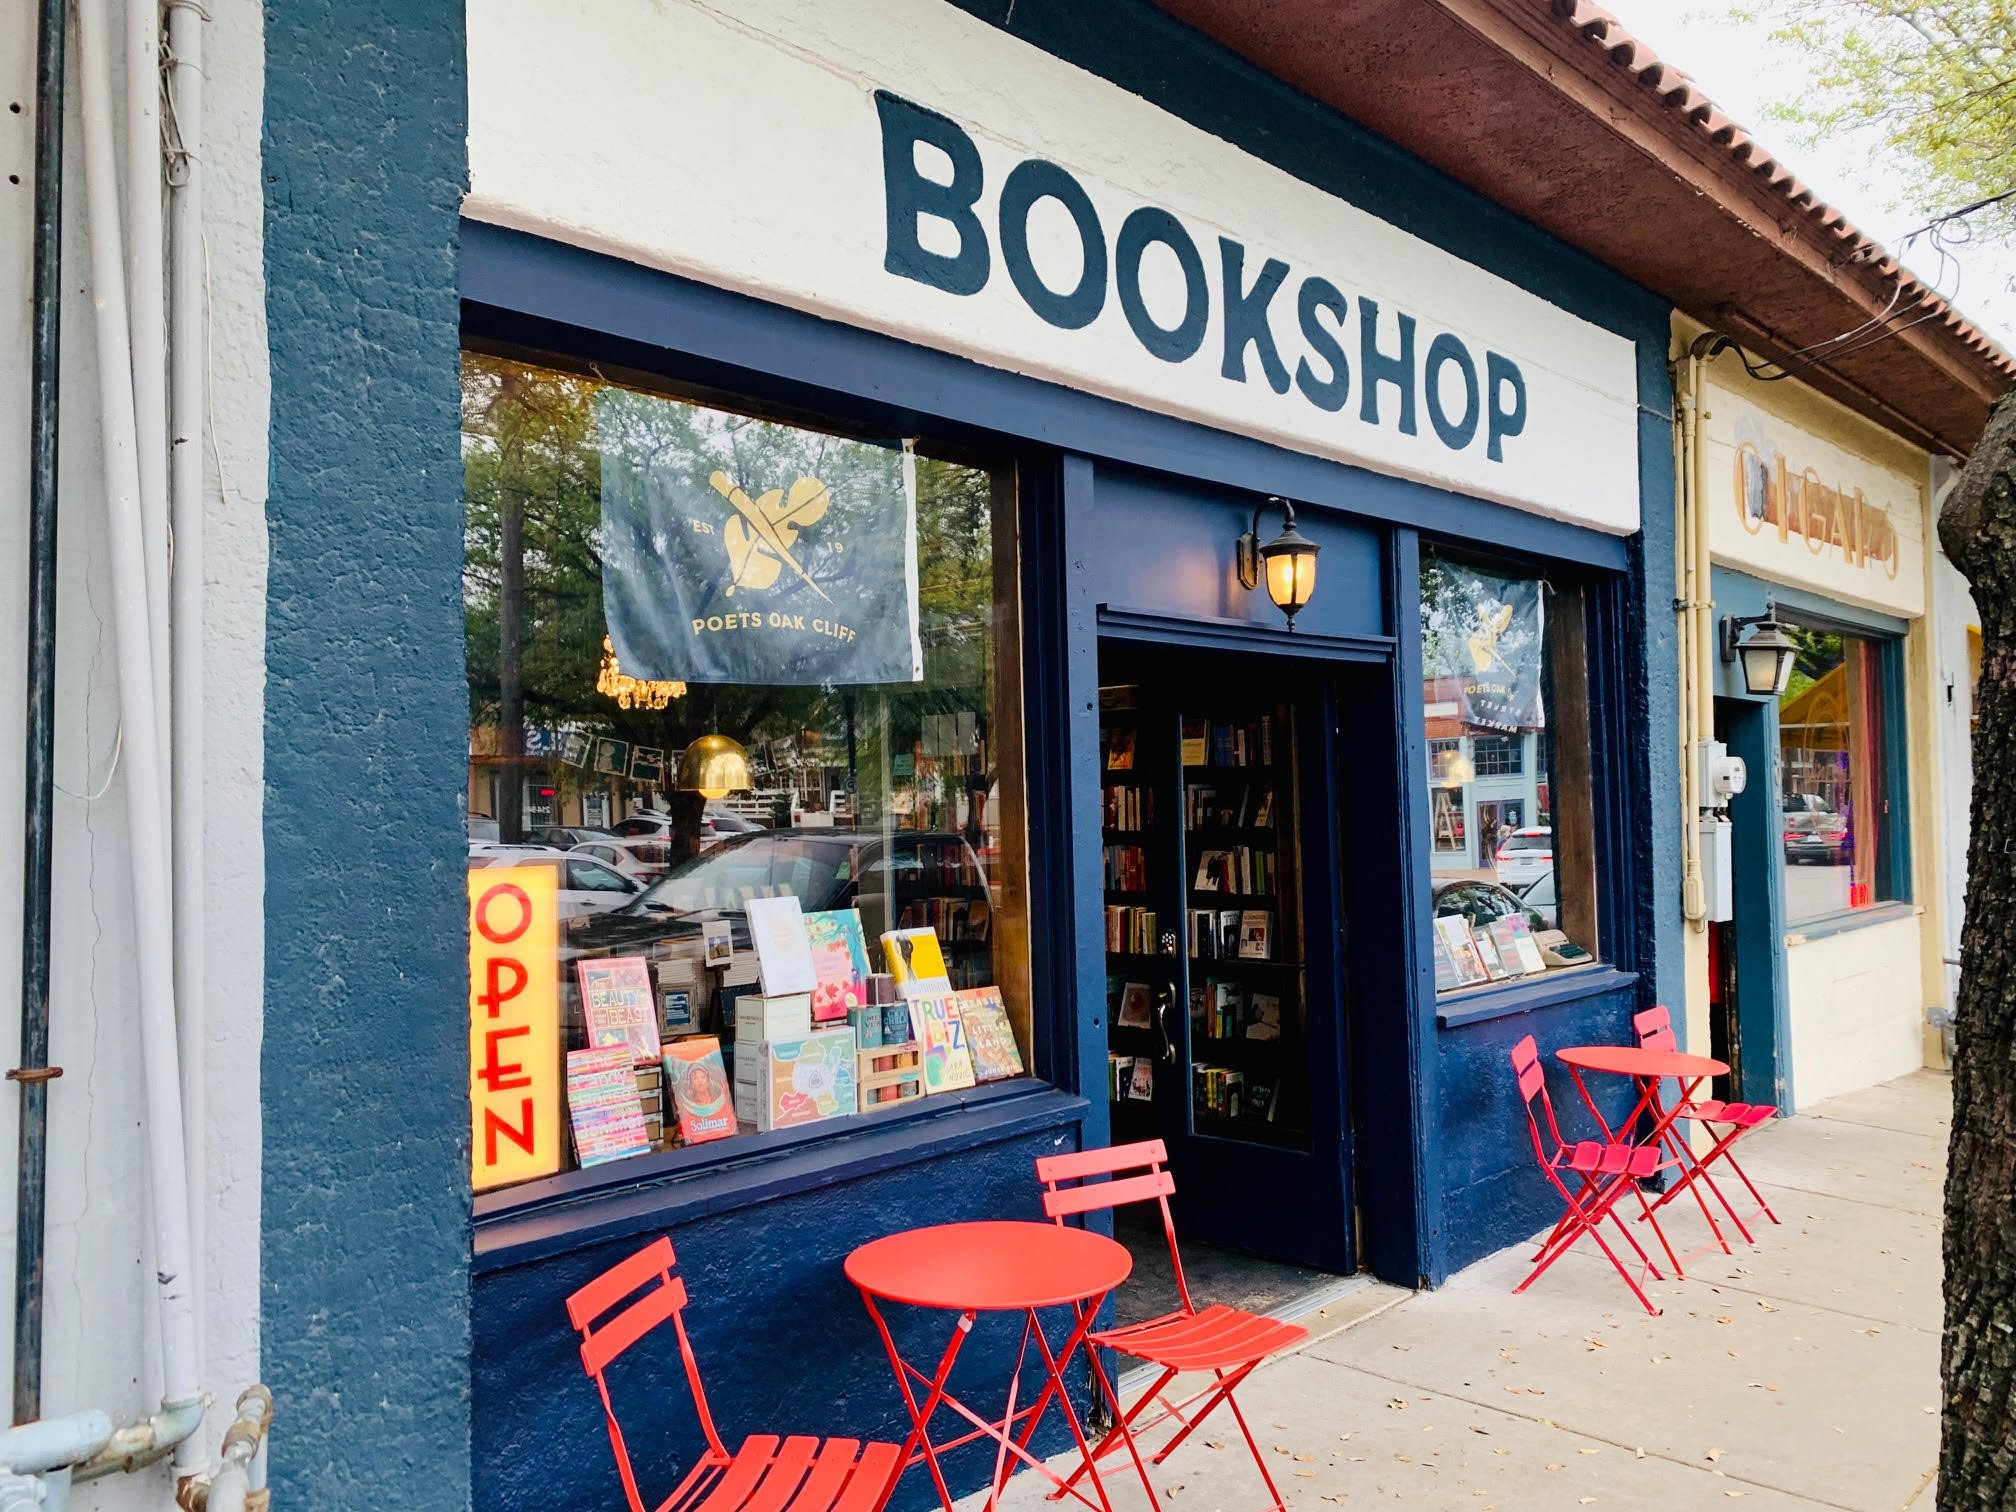 The Dal Bookstore